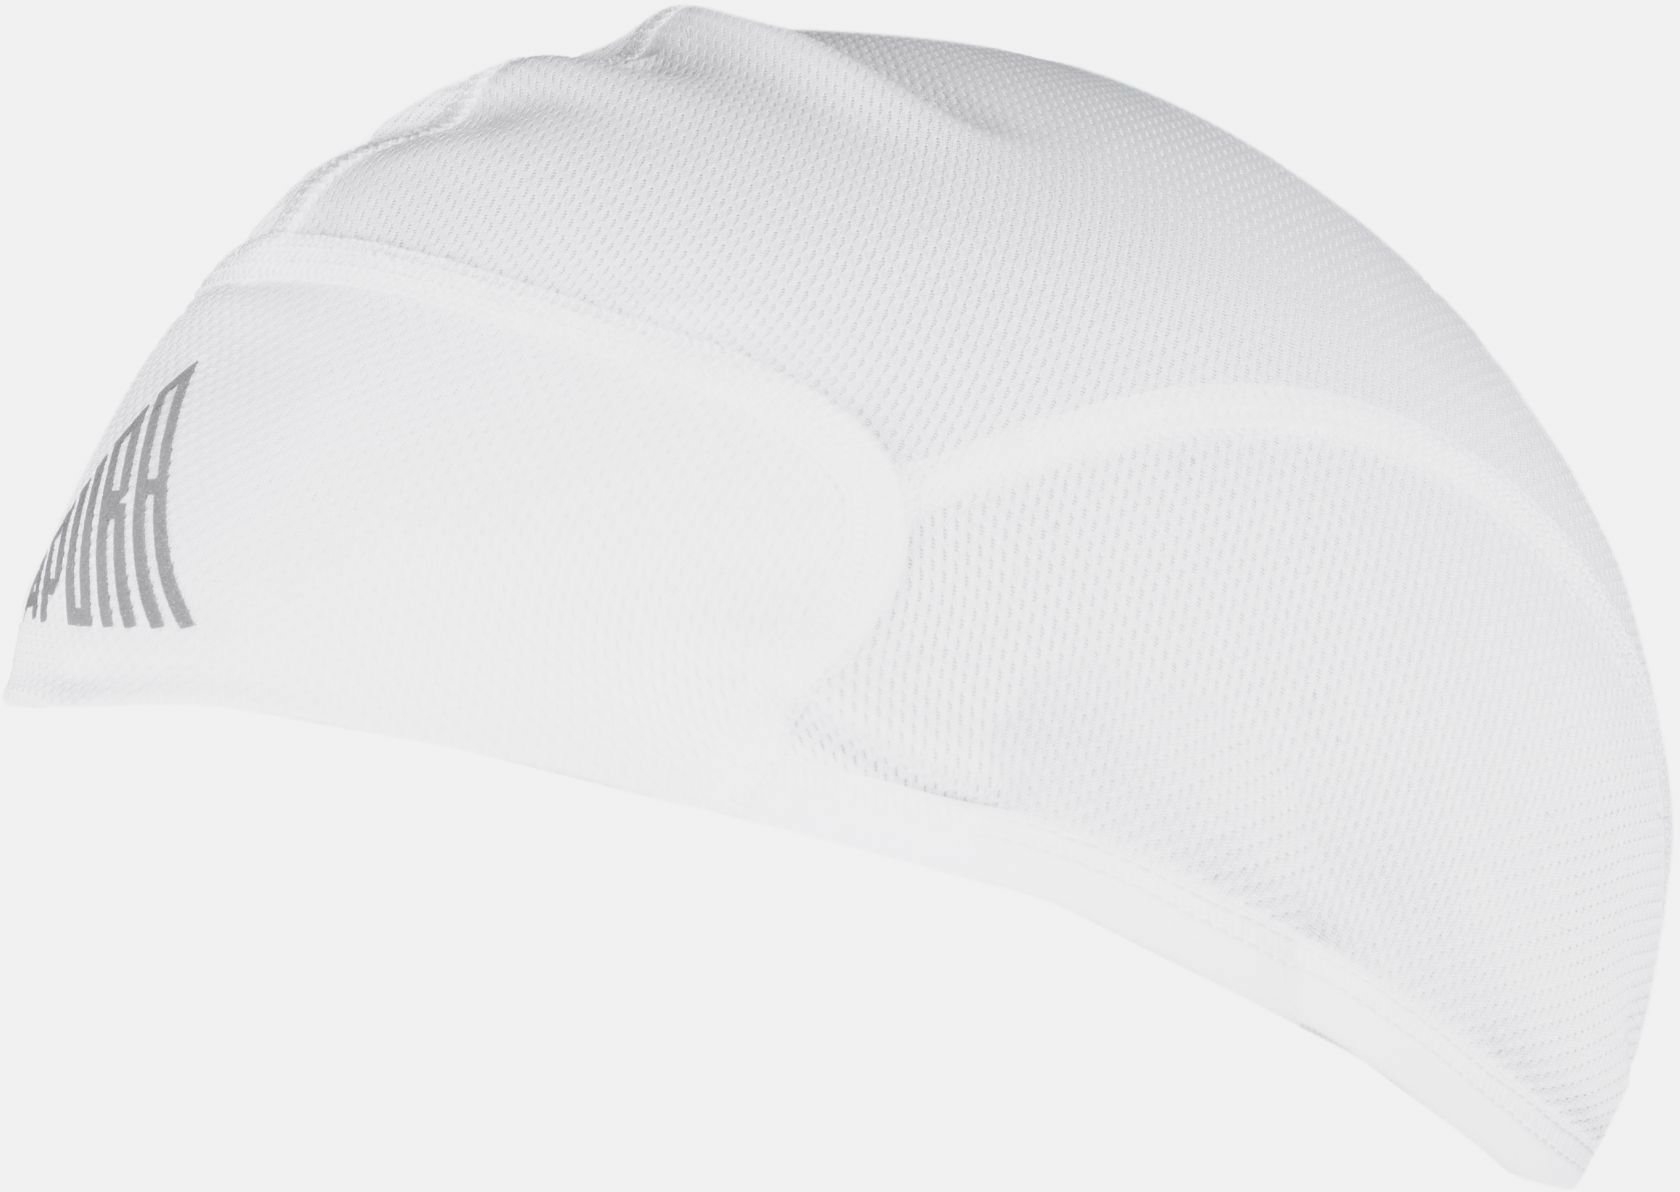 Bekleidung/Accessoires: Apura  Helmmütze UV Shield SM 